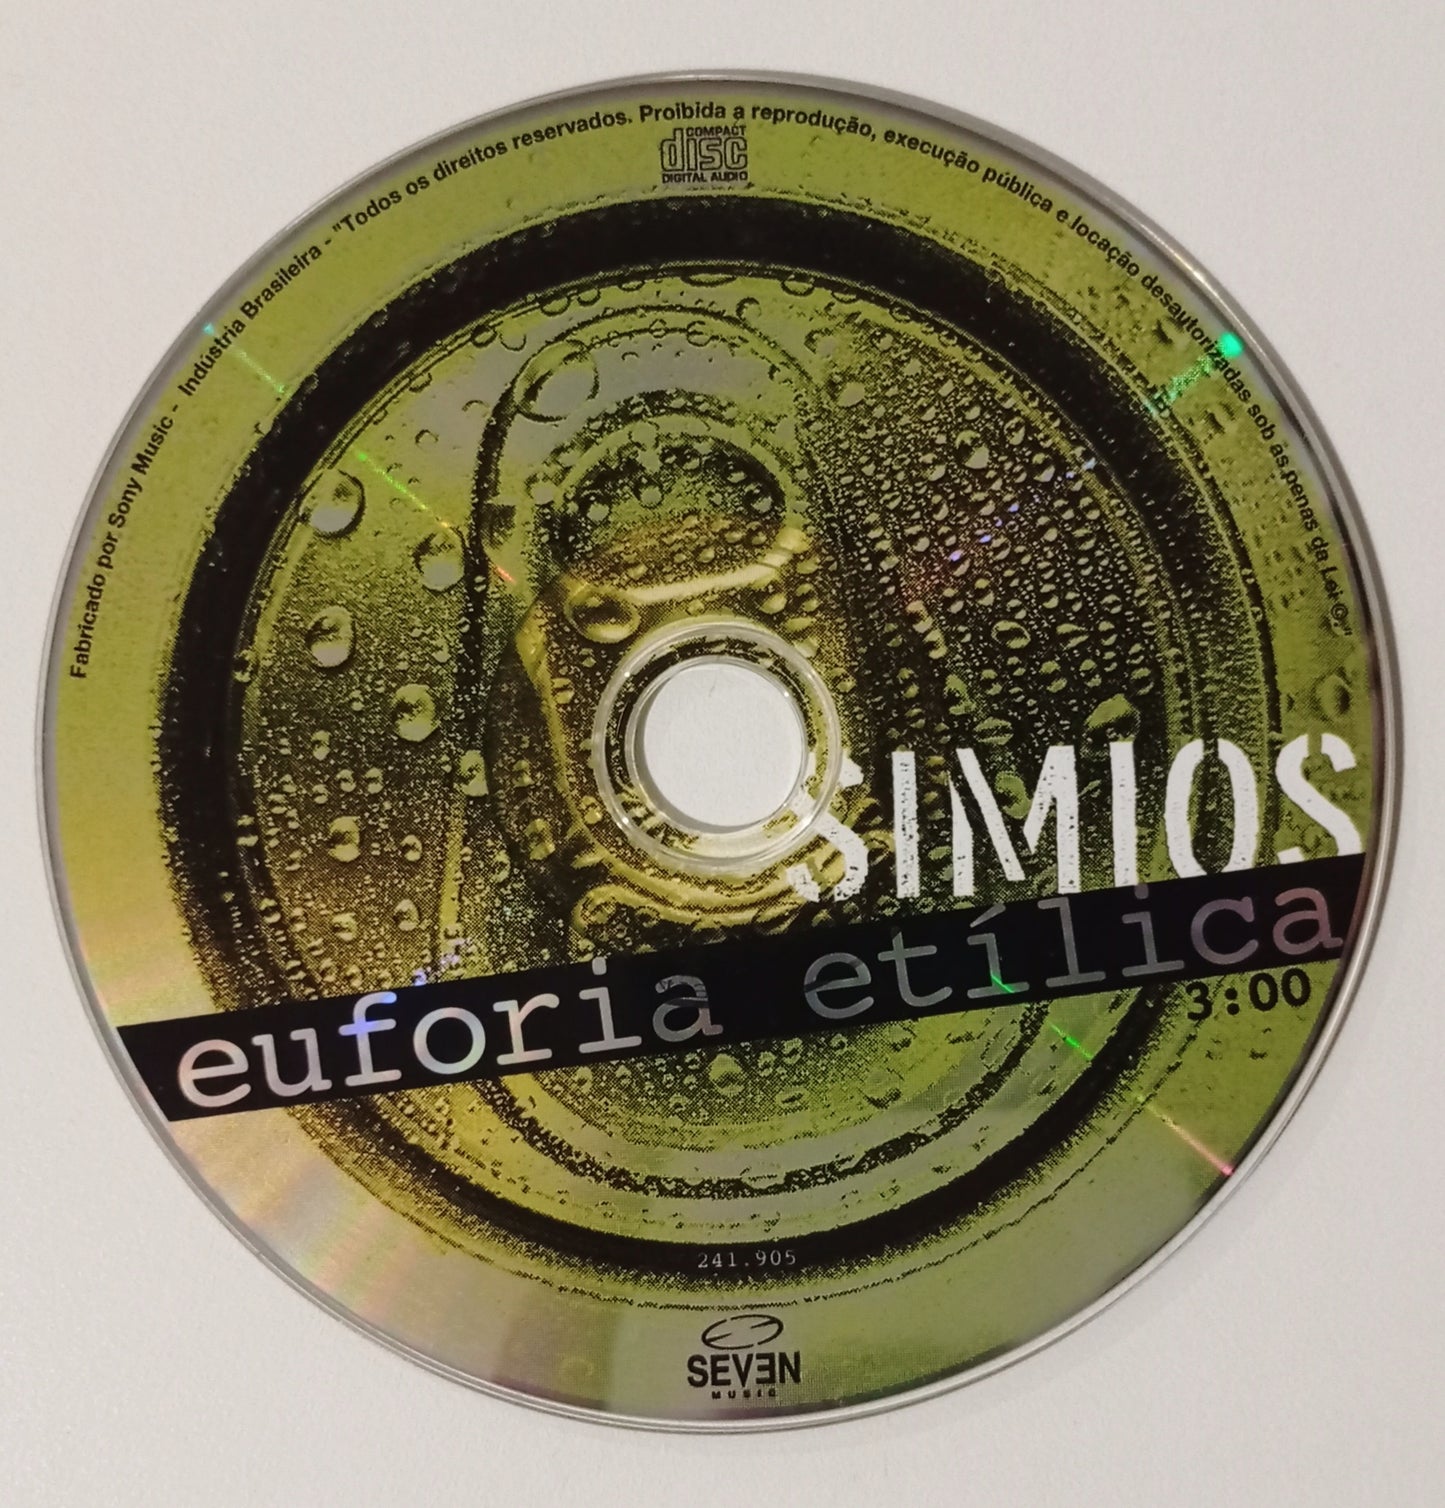 Simios - Euforia Etílica (CD Nacional - Usado)